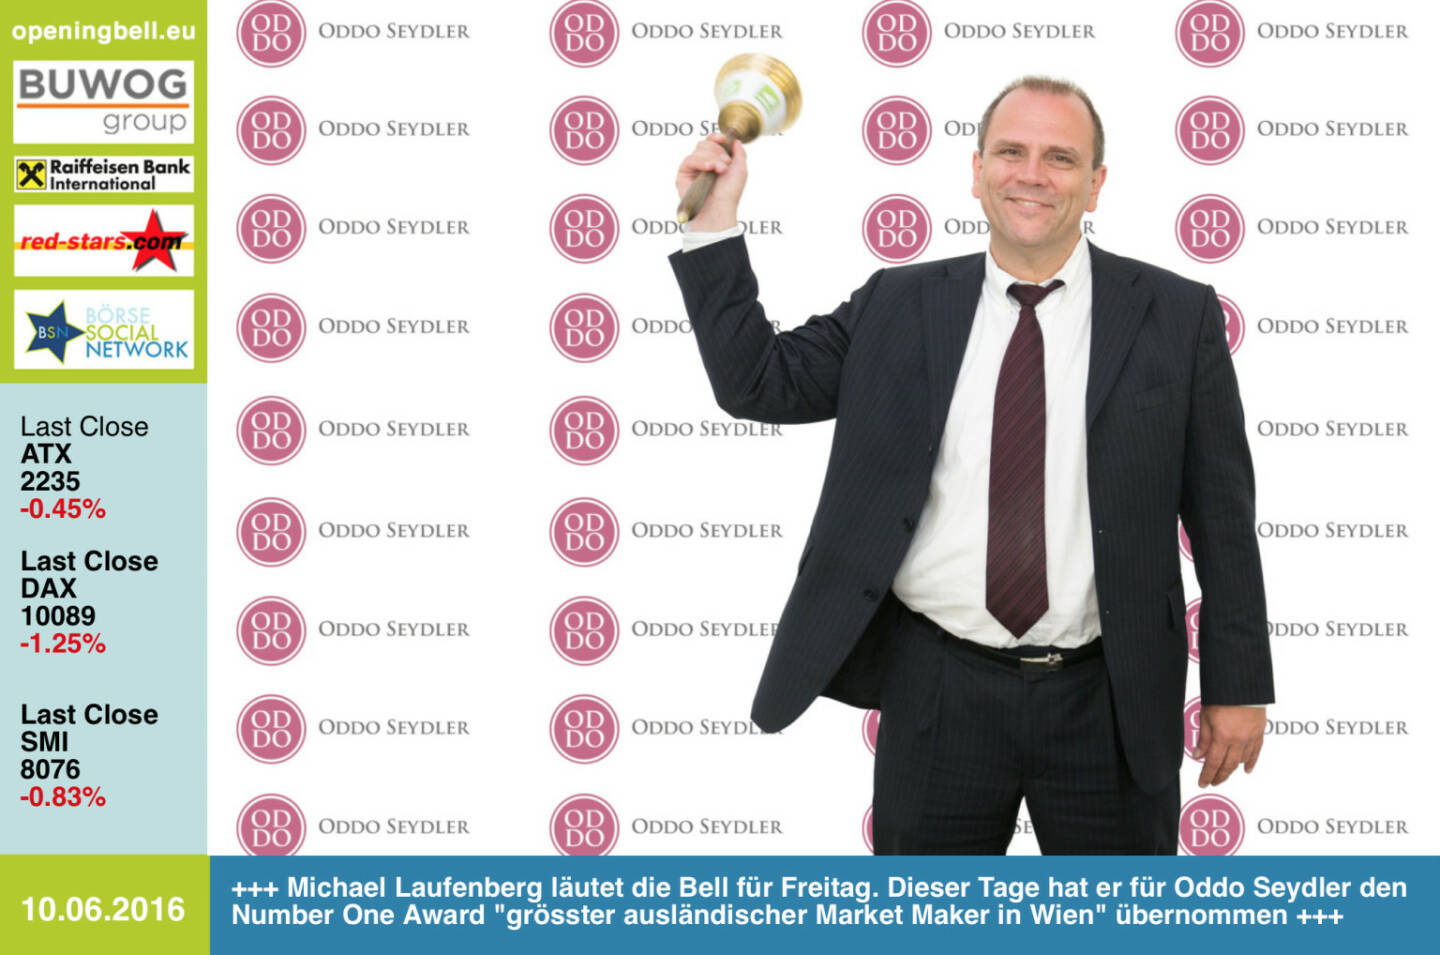 #openingbell am 10.6: Michael Laufenberg läutet die Opening Bell für Freitag. Dieser Tage hat er für Oddo Seydler den Number One Award grösster ausländischer Market Maker in Wien übernommen http://www.oddoseydler.com http://www.openingbell.eu